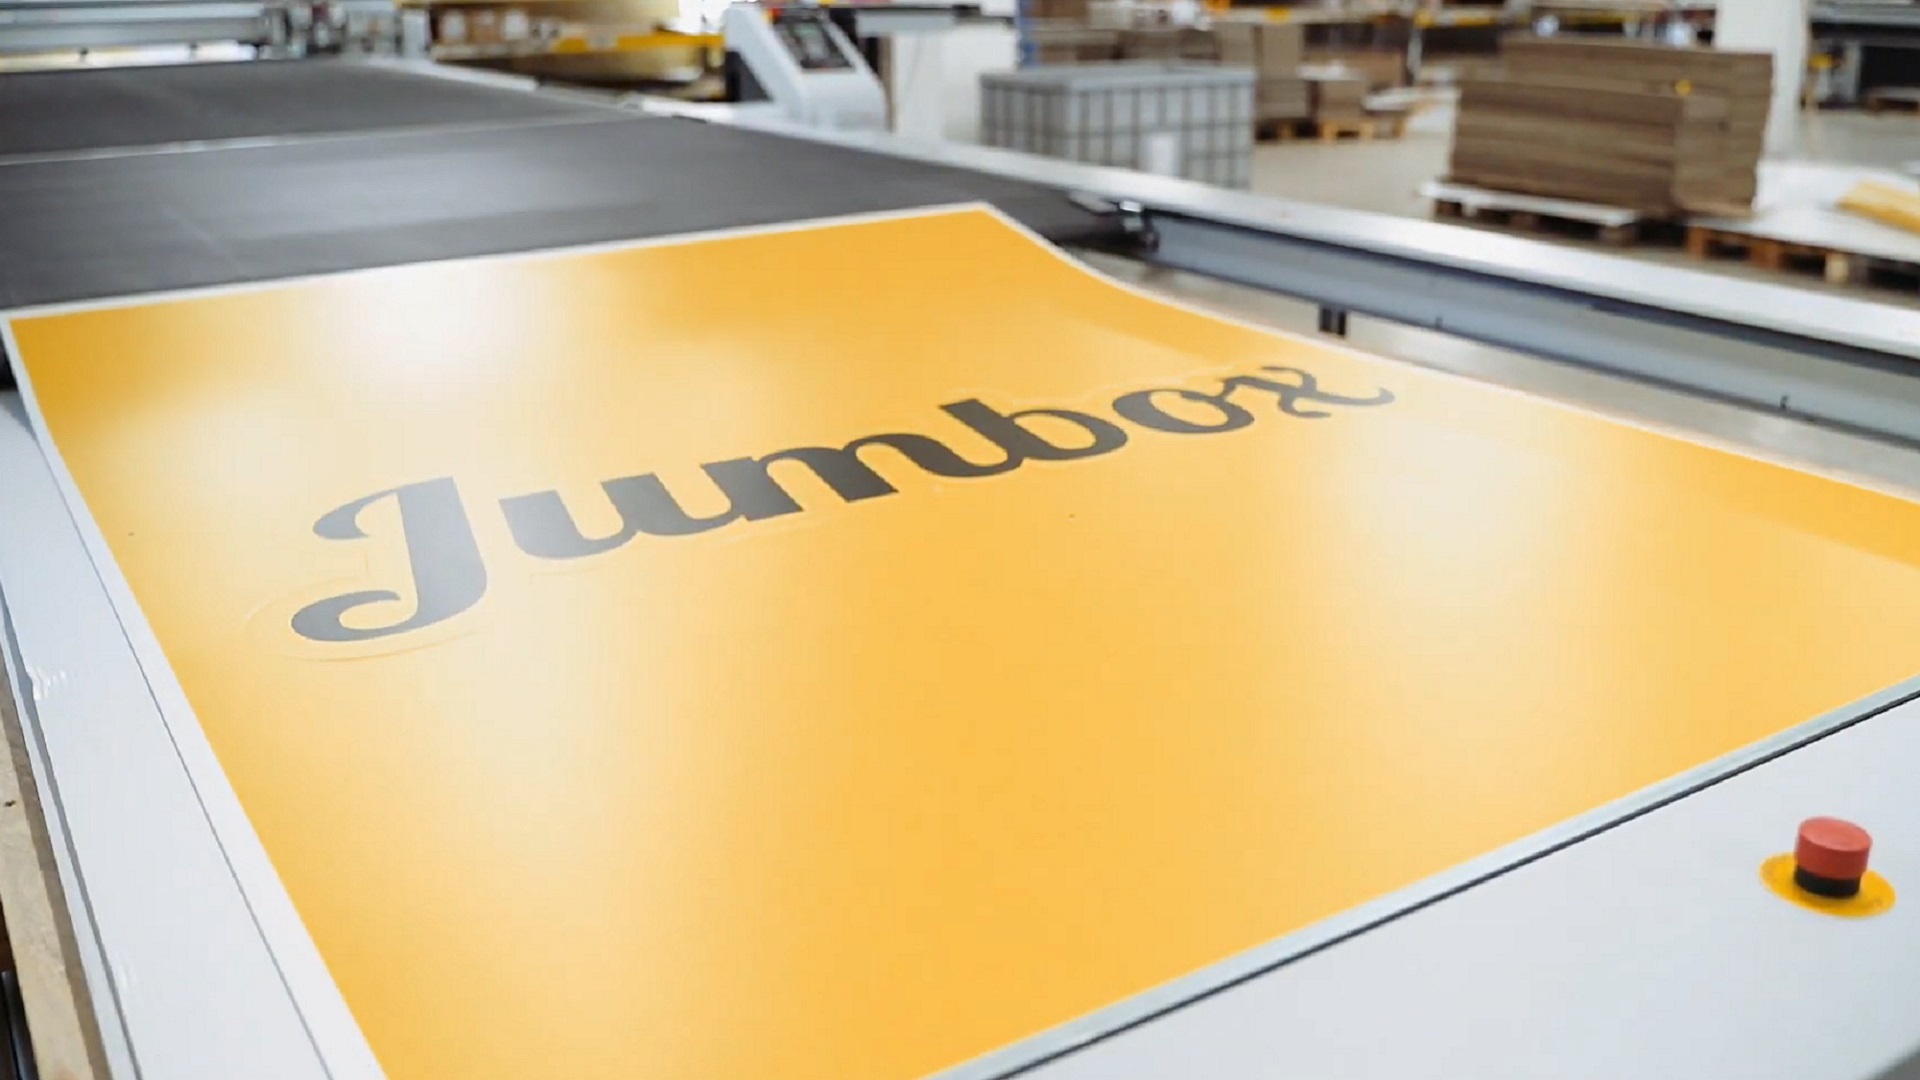 JUMBOX - Reklamní spot na digitální tisk